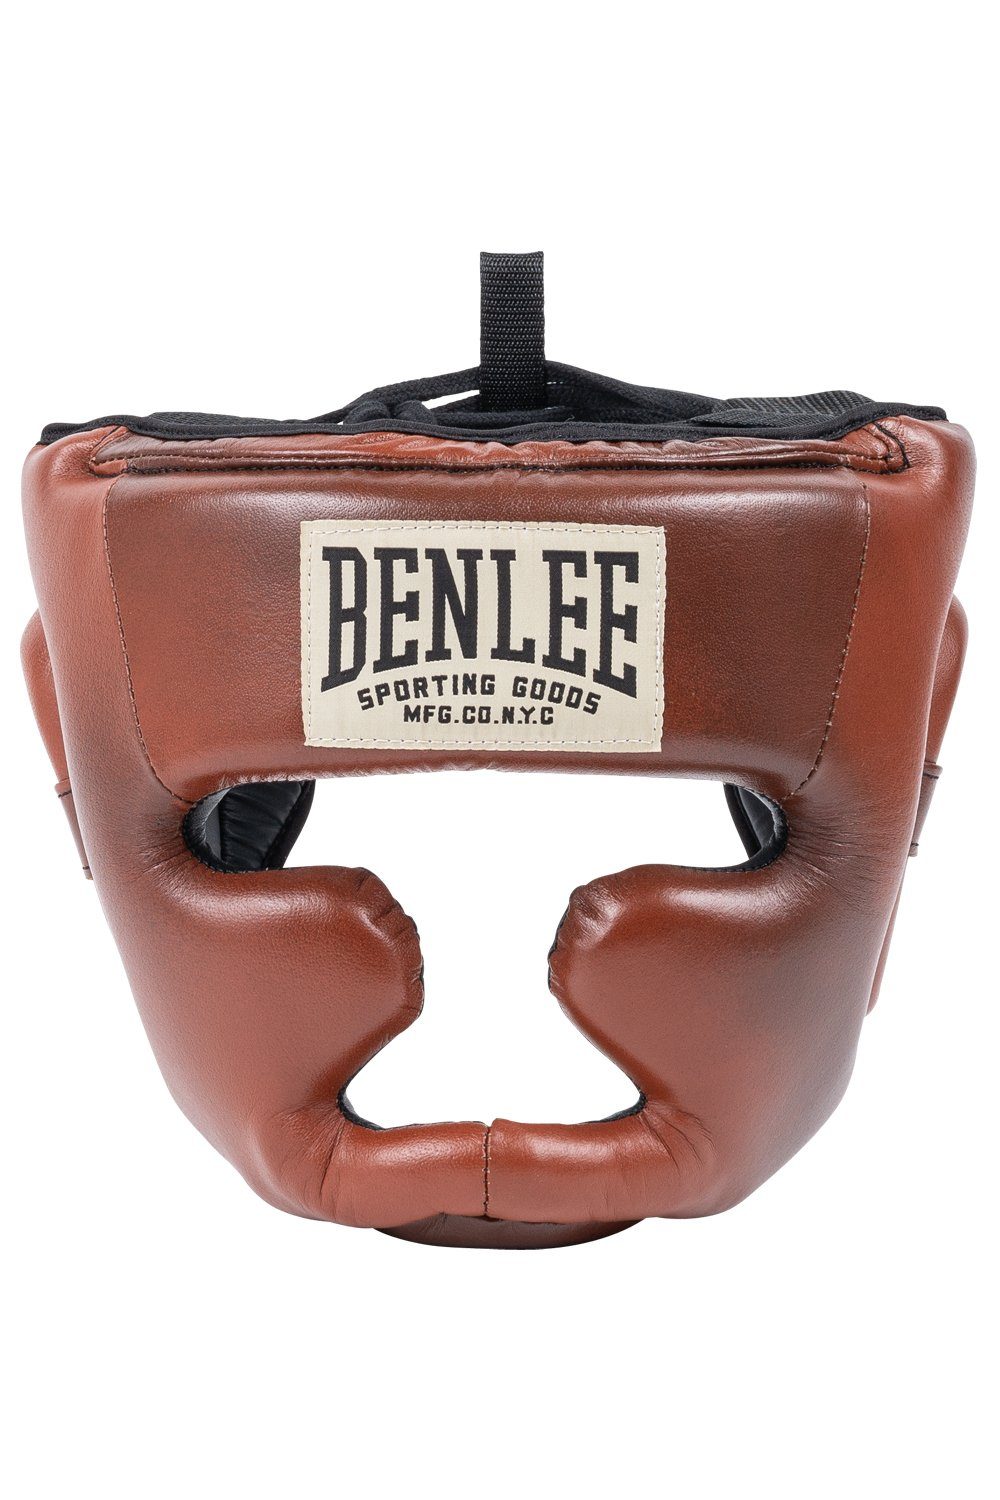 Benlee Rocky Marciano Kopfschutz PREMIUM HEADGUARD